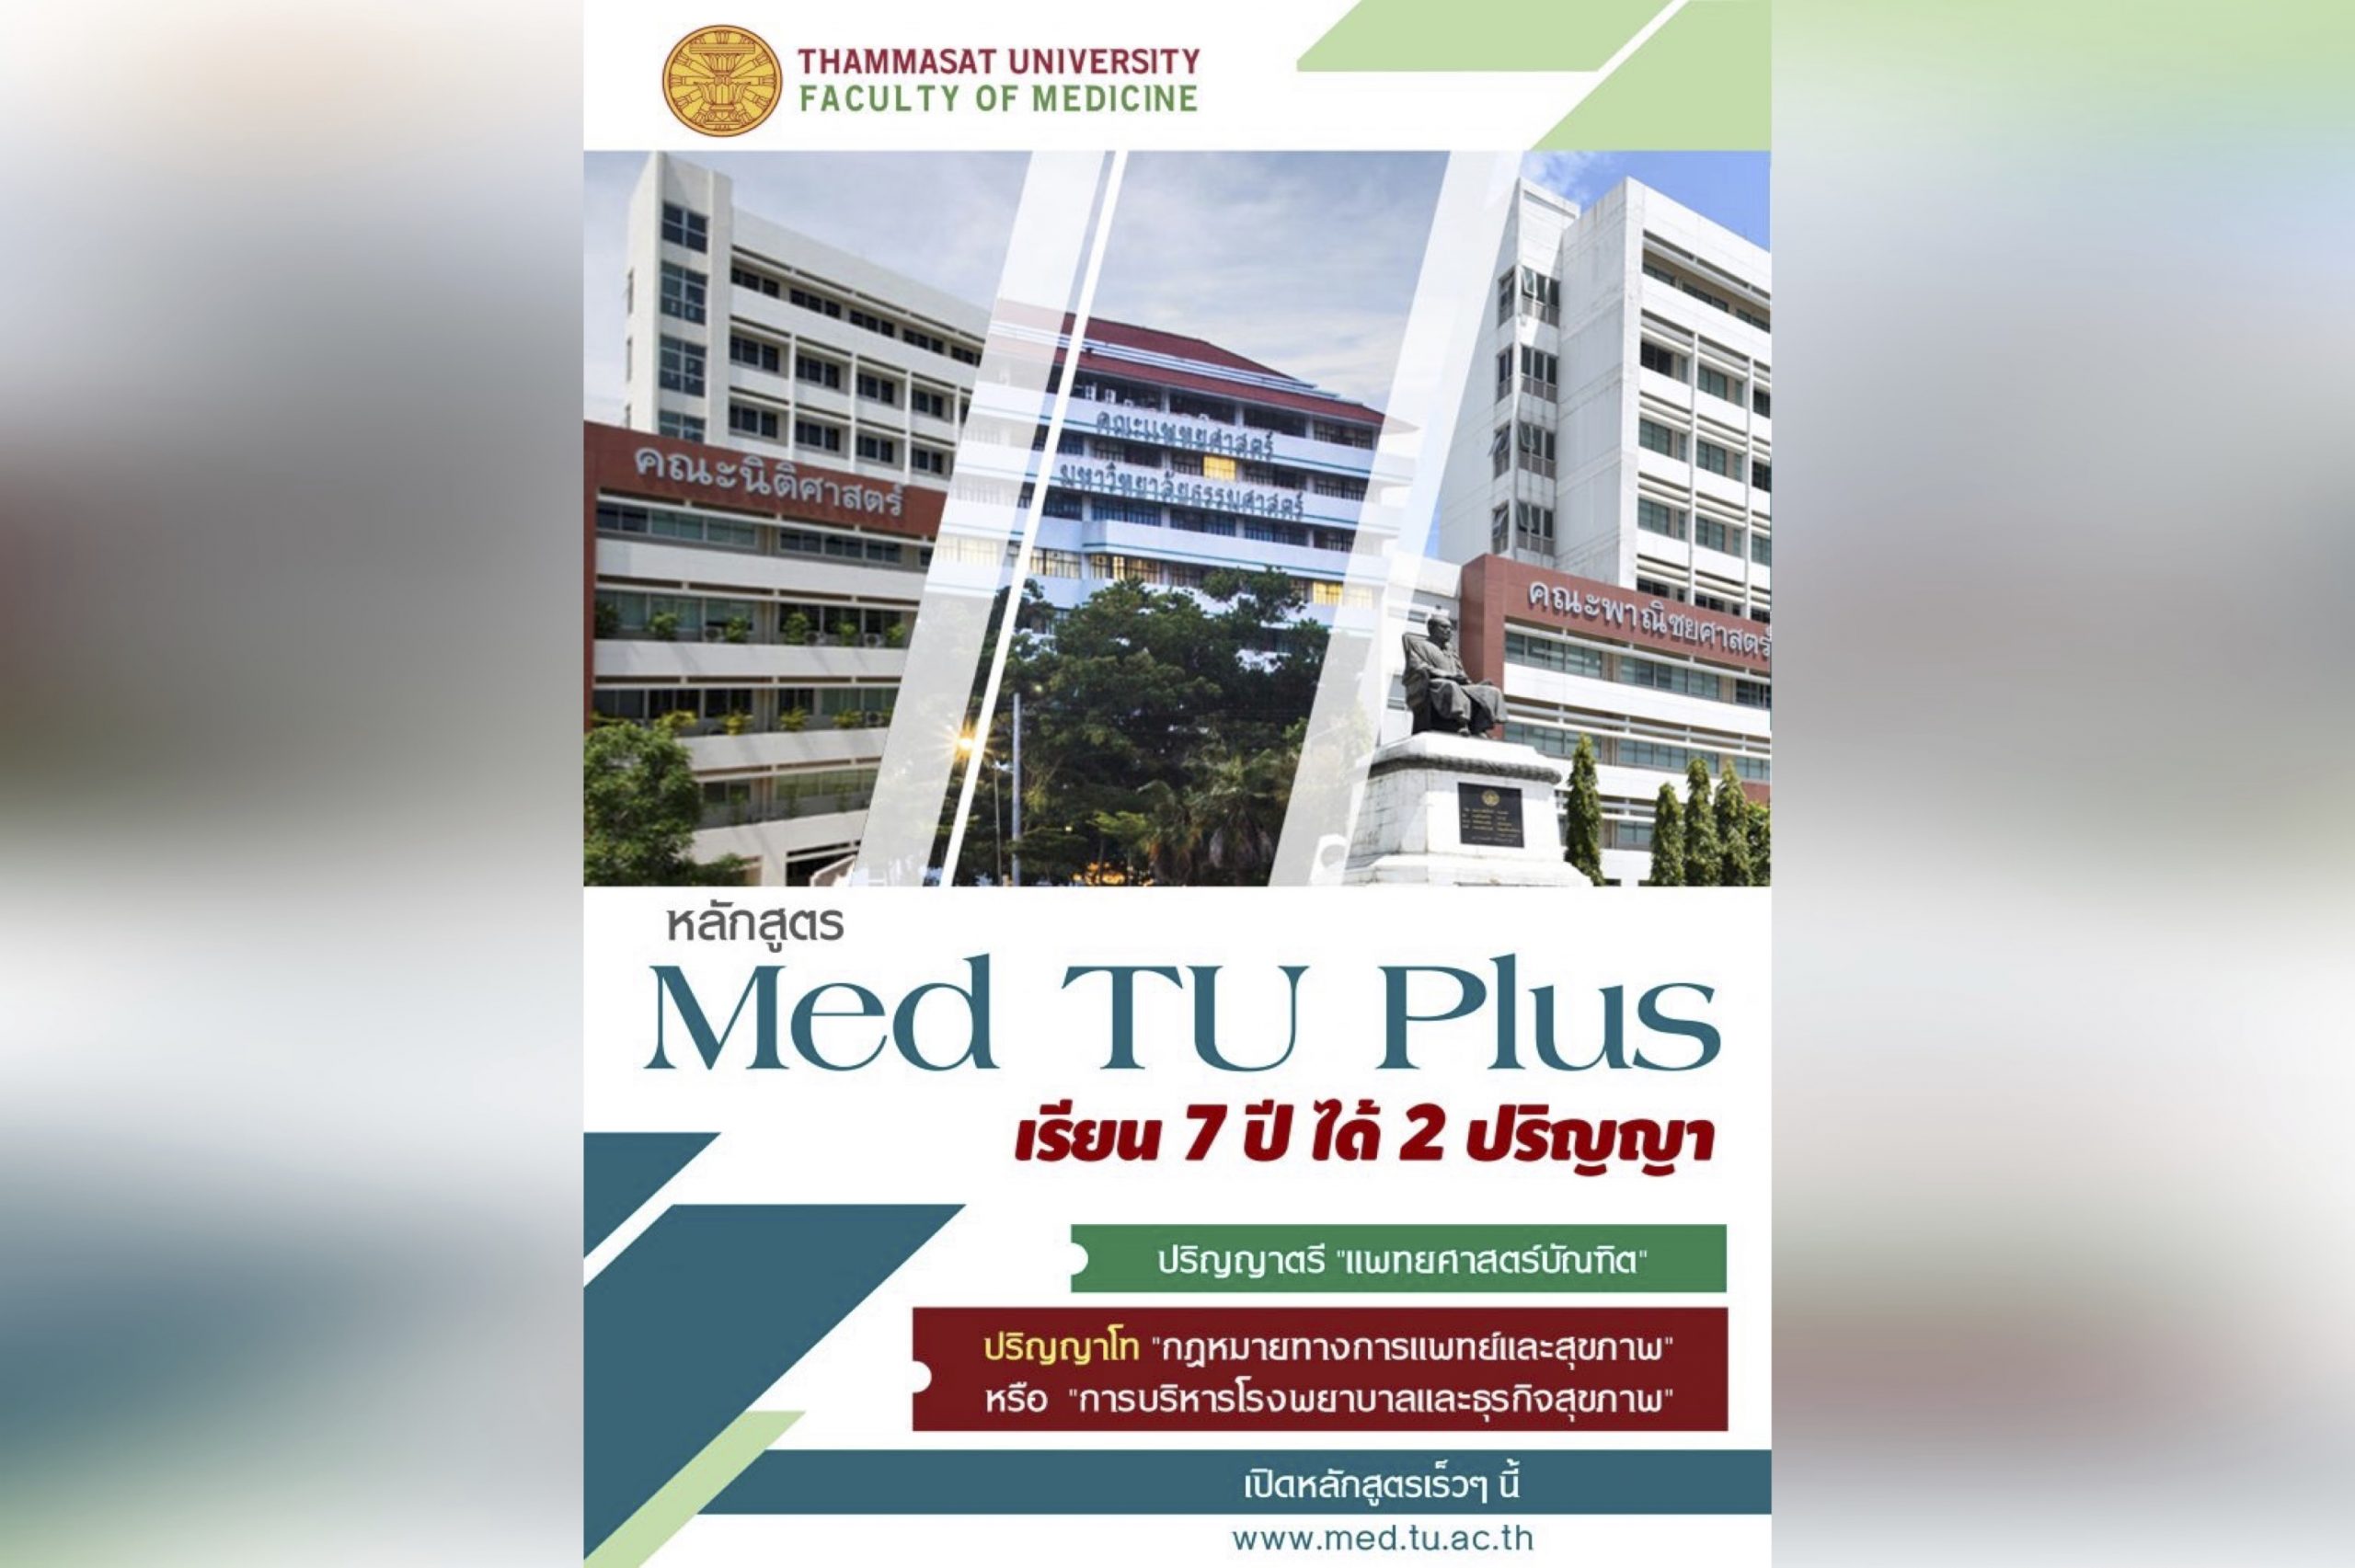 รายละเอียดเกี่ยวกับหลักสูตร Med TU Plus เรียน 7 ปี ได้ 2 ปริญญา